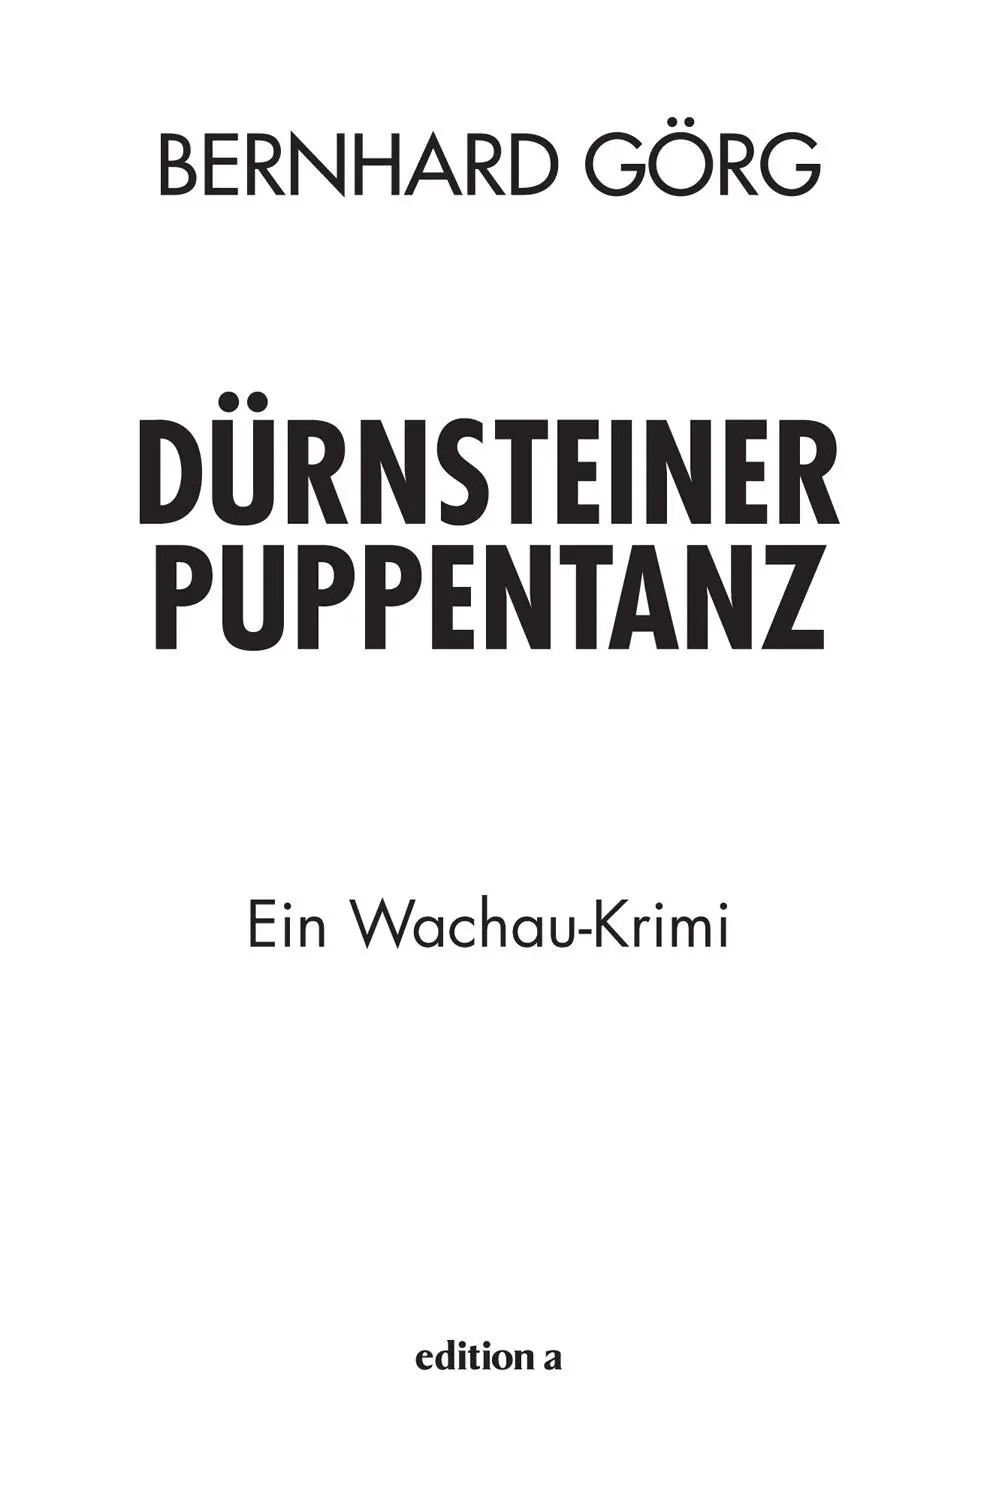 Bernhard Görg Dürnsteiner Puppentanz Alle Rechte vorbehalten 2019 edition a - фото 1